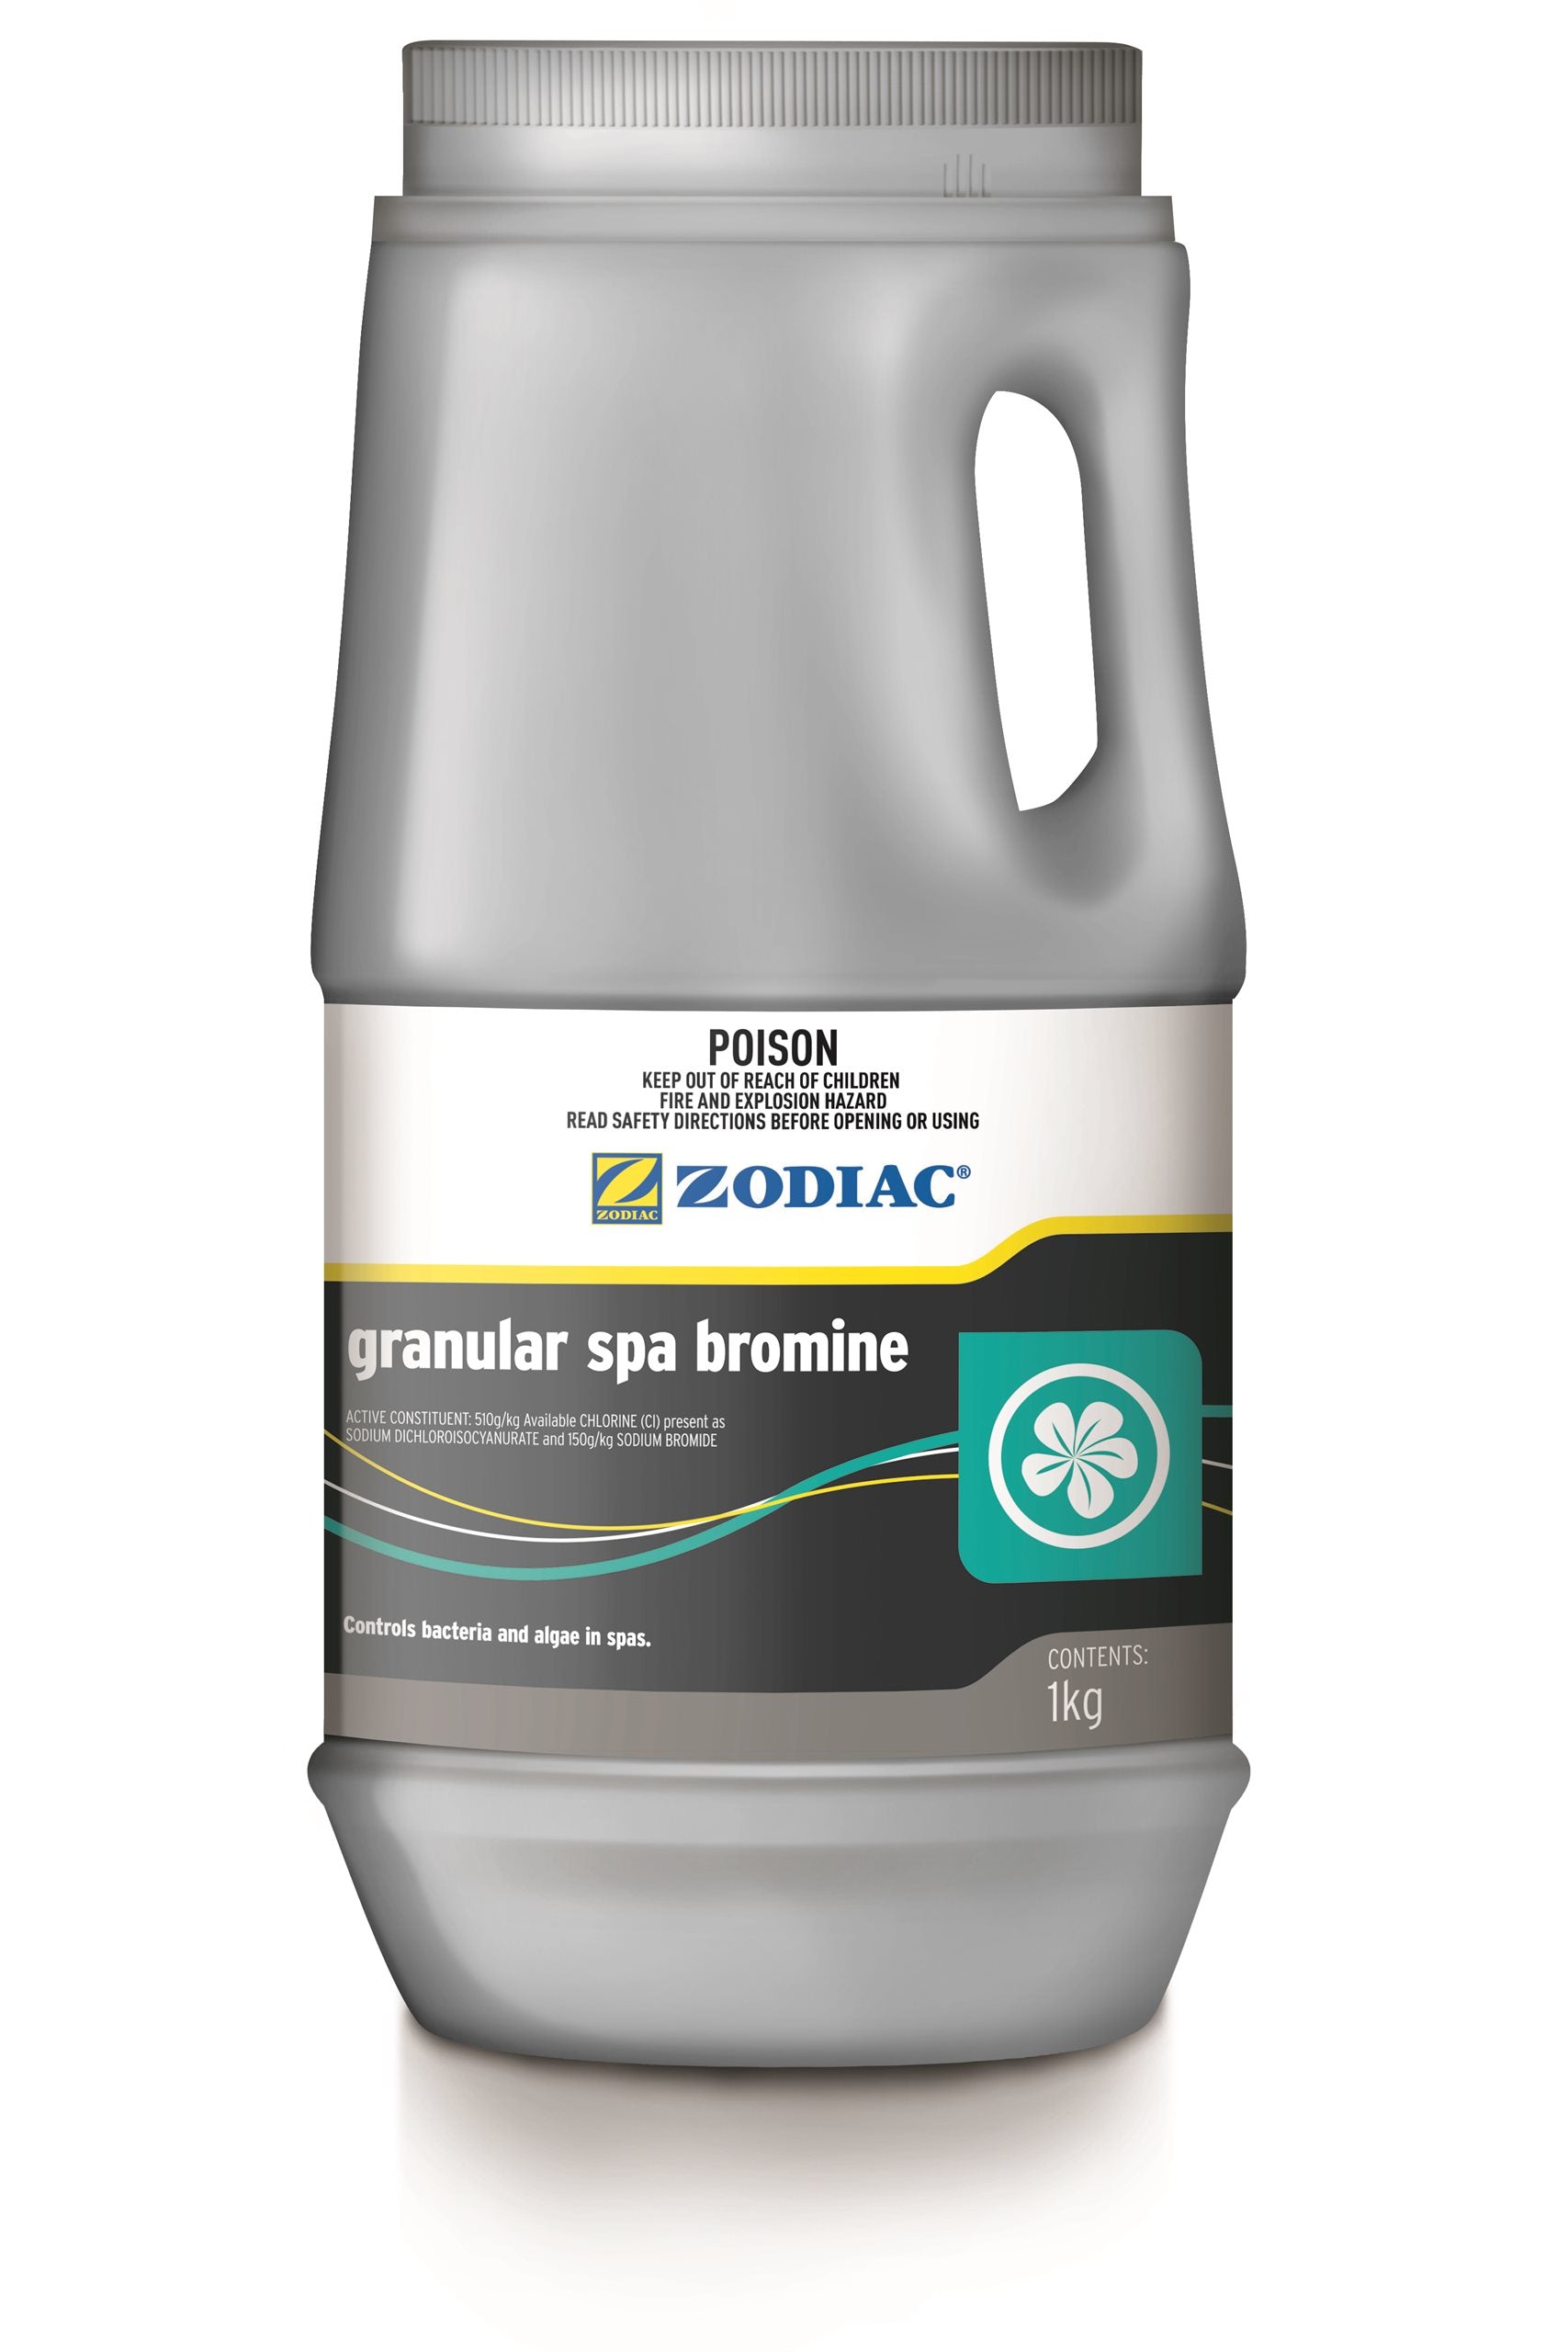 Zodiac 1Kg Granular Spa Bromine